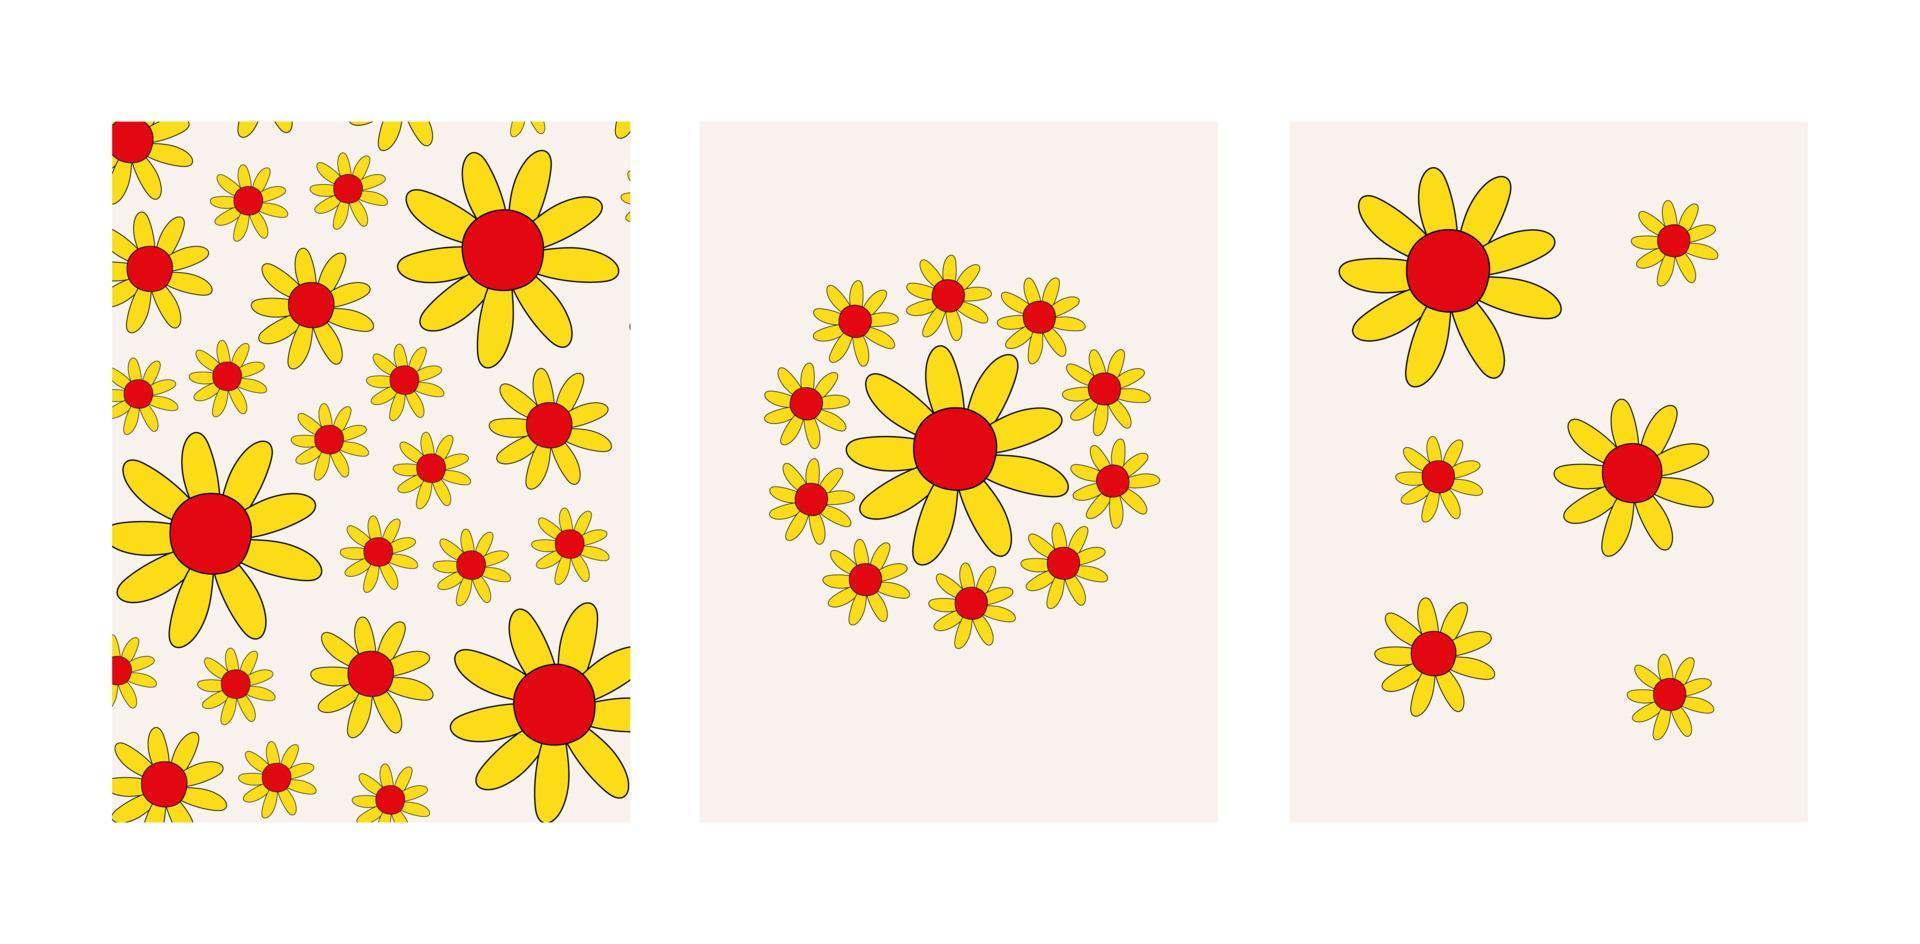 poster vintage retrò in stile hippie anni '60, '70. motivi groovy con forme di fiori. illustrazione vettoriale colorata